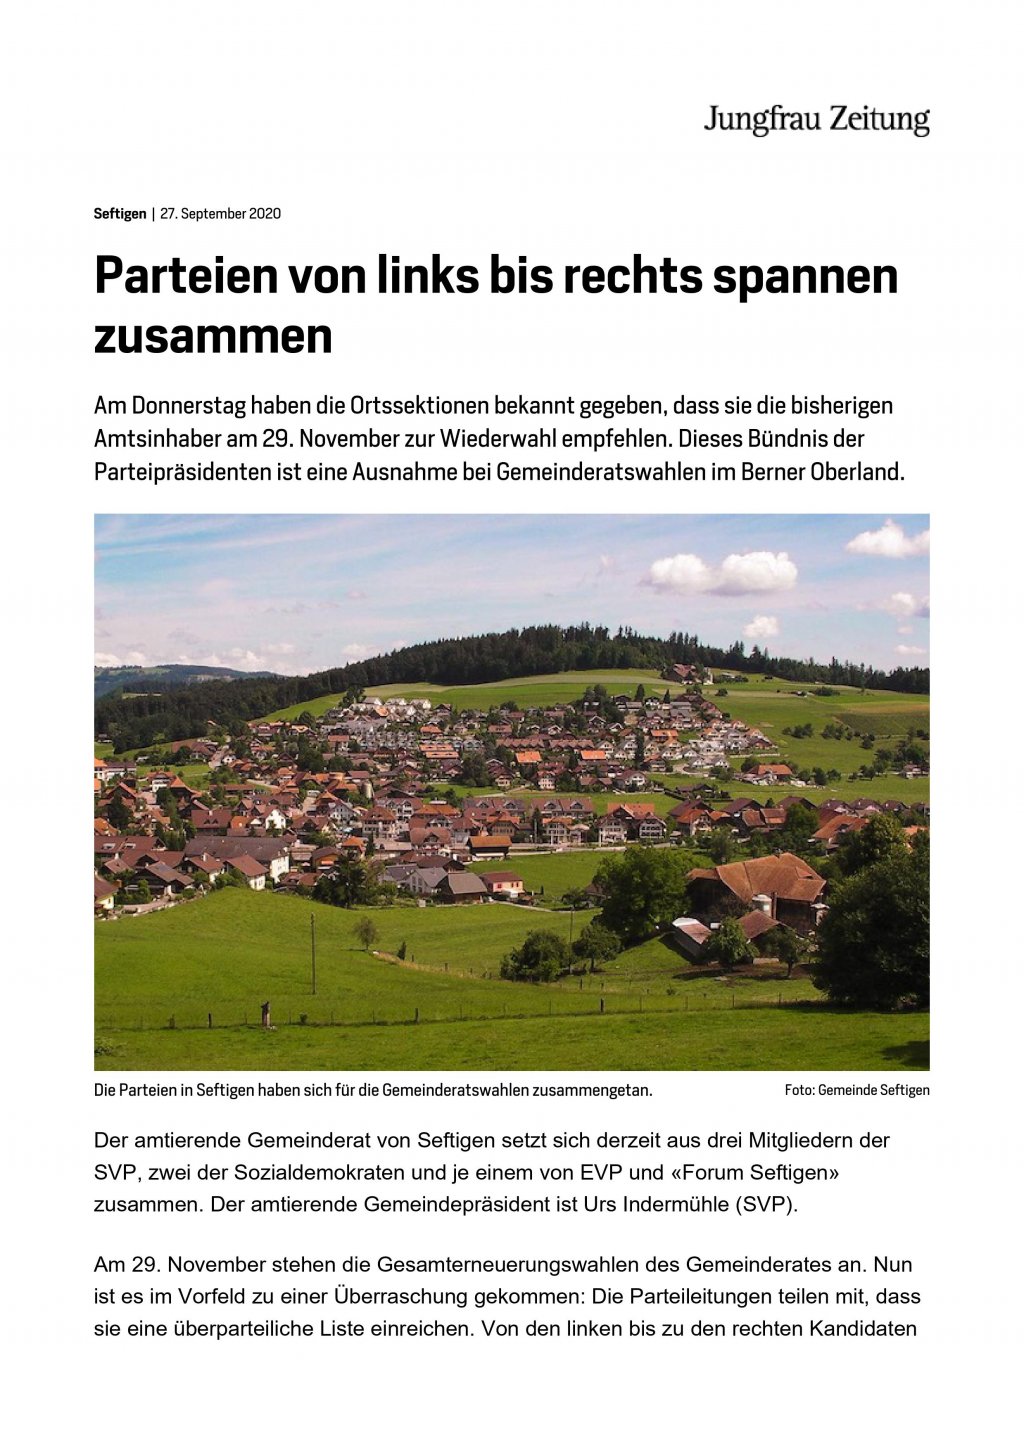 image-10756859-Jungfrauzeitung_Gemeinsame_Liste_für_GR-Wahlen_November_2020_1-6512b.w640.jpg